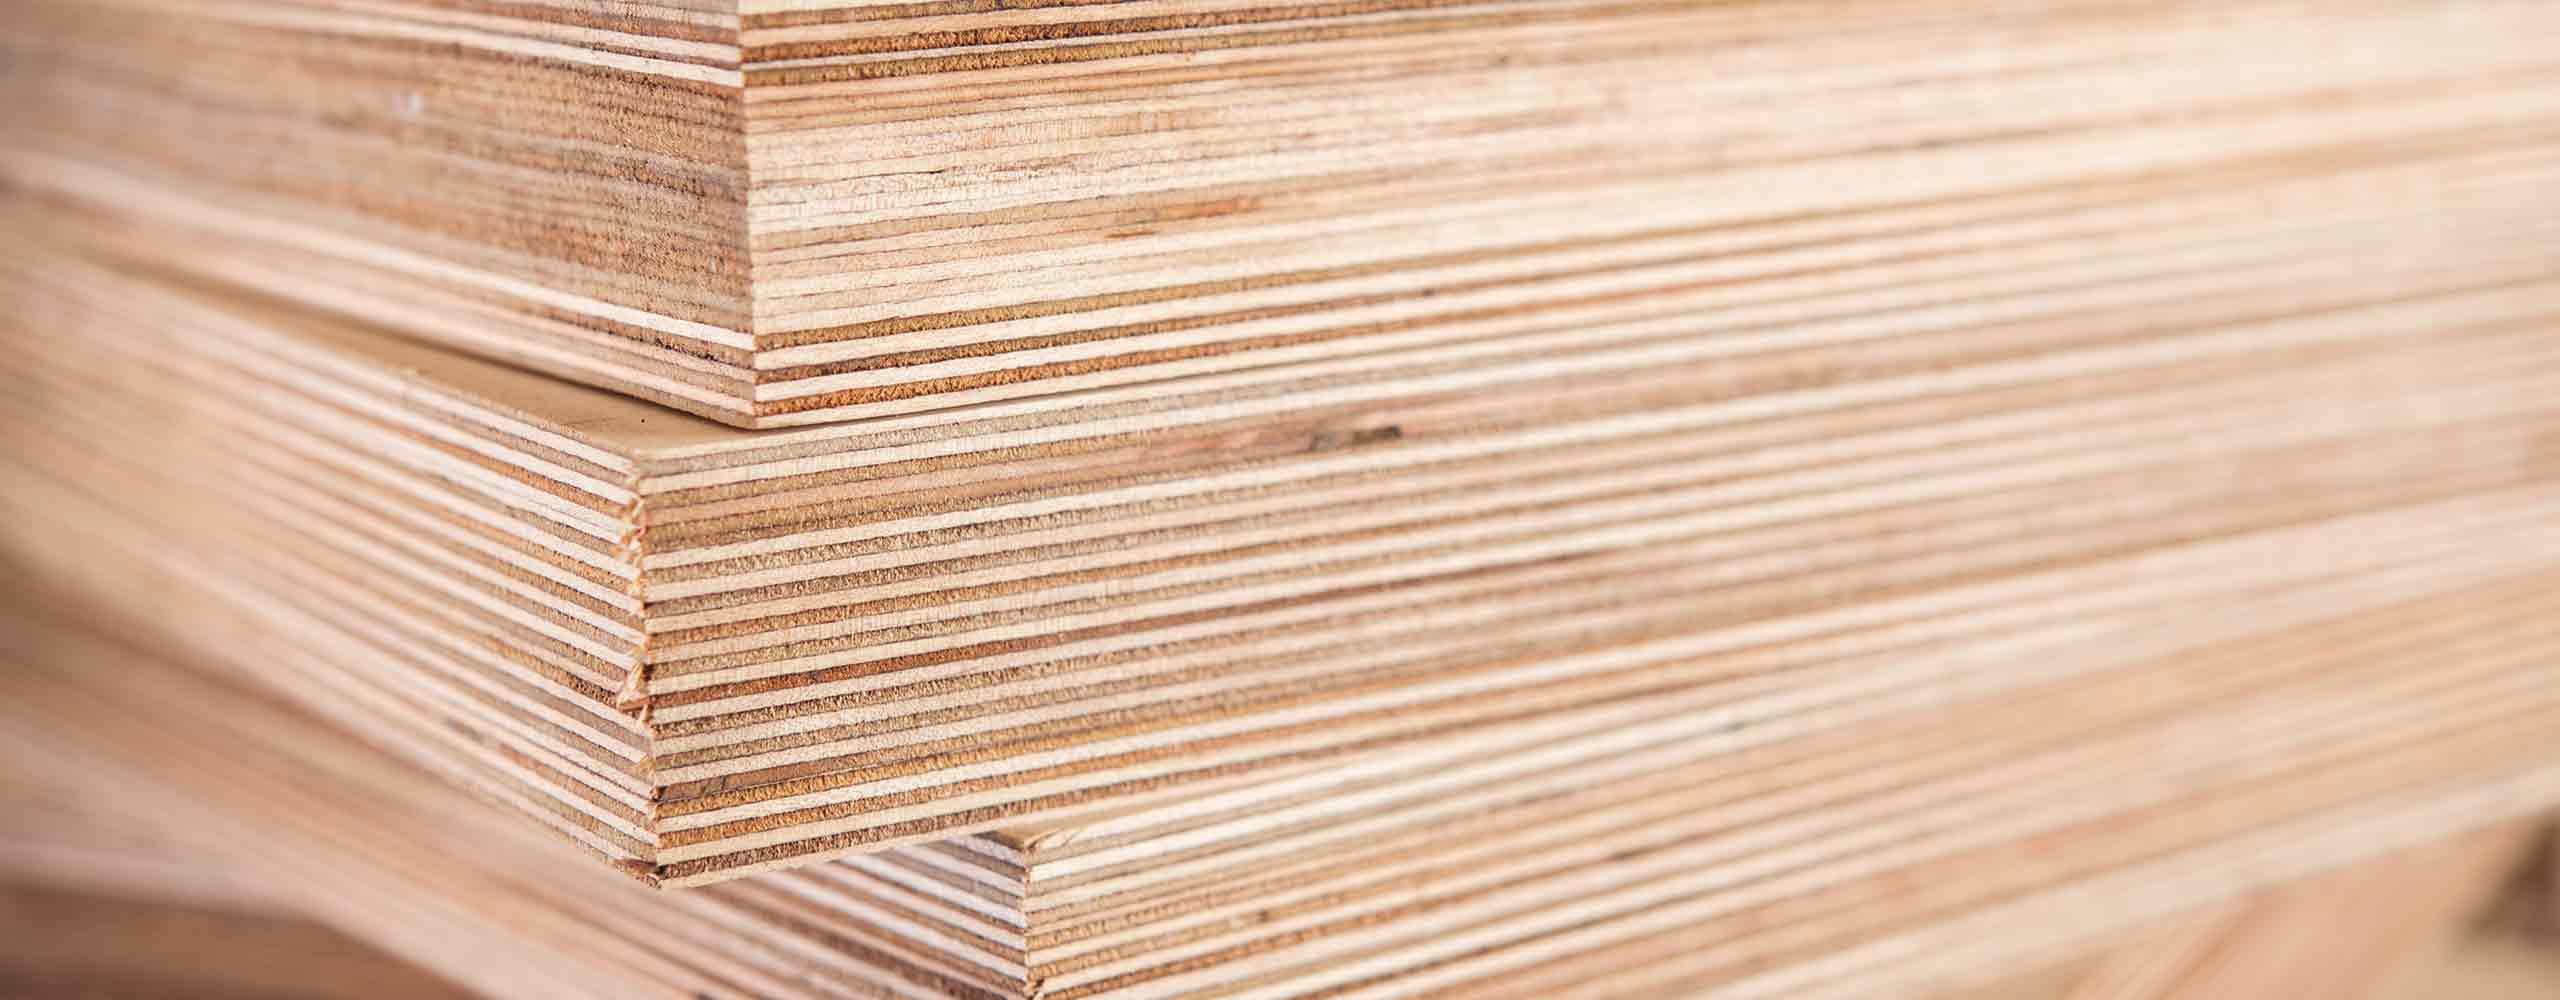 Lösungen für Holz und Holzwerkstoffe